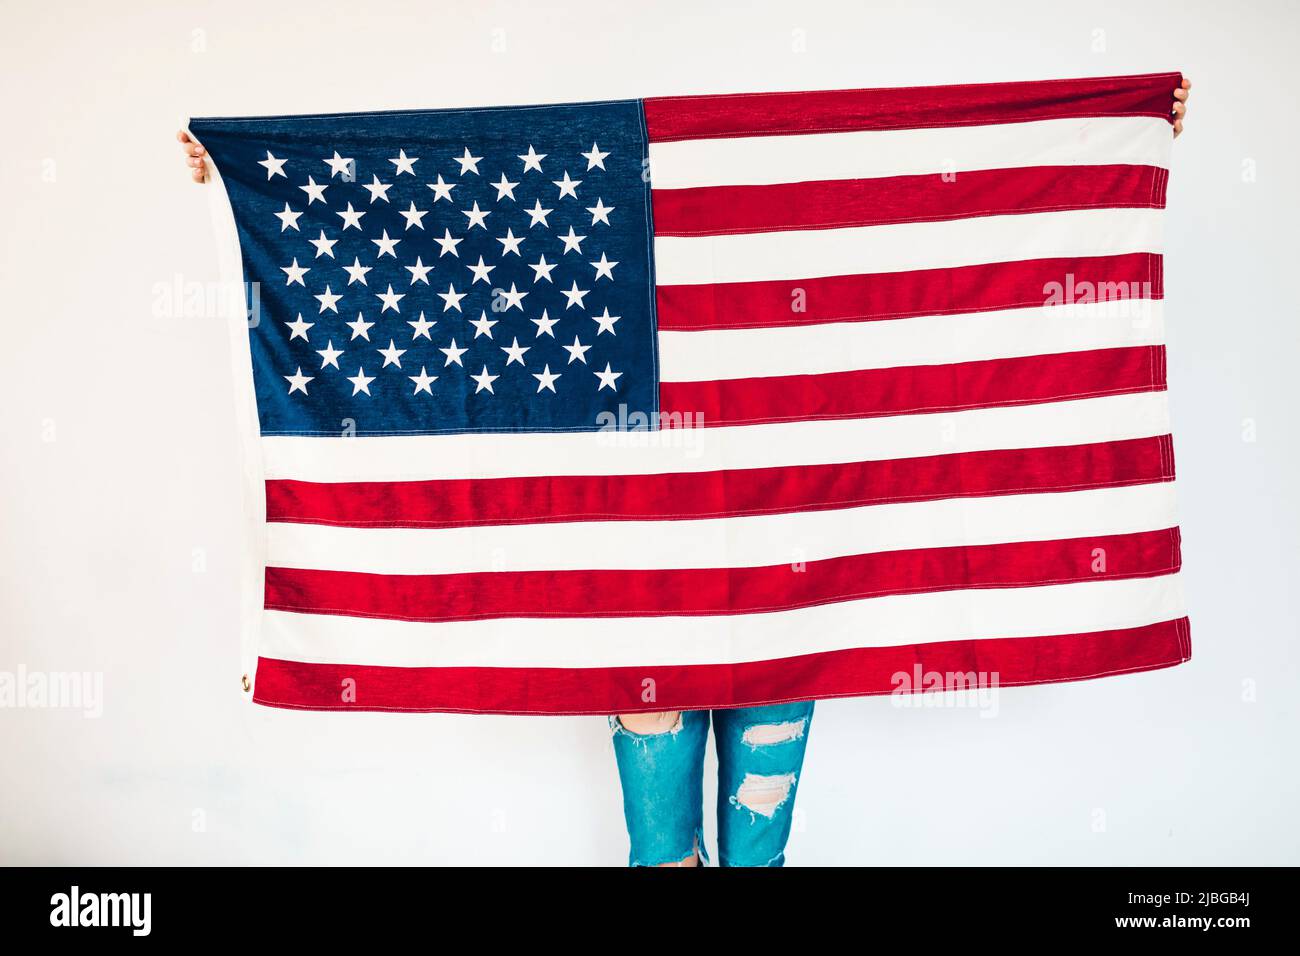 Ragazza che detiene una bandiera americana nel giorno dell'indipendenza degli Stati Uniti, luglio 4th. Concentrarsi sulla bandiera Foto Stock